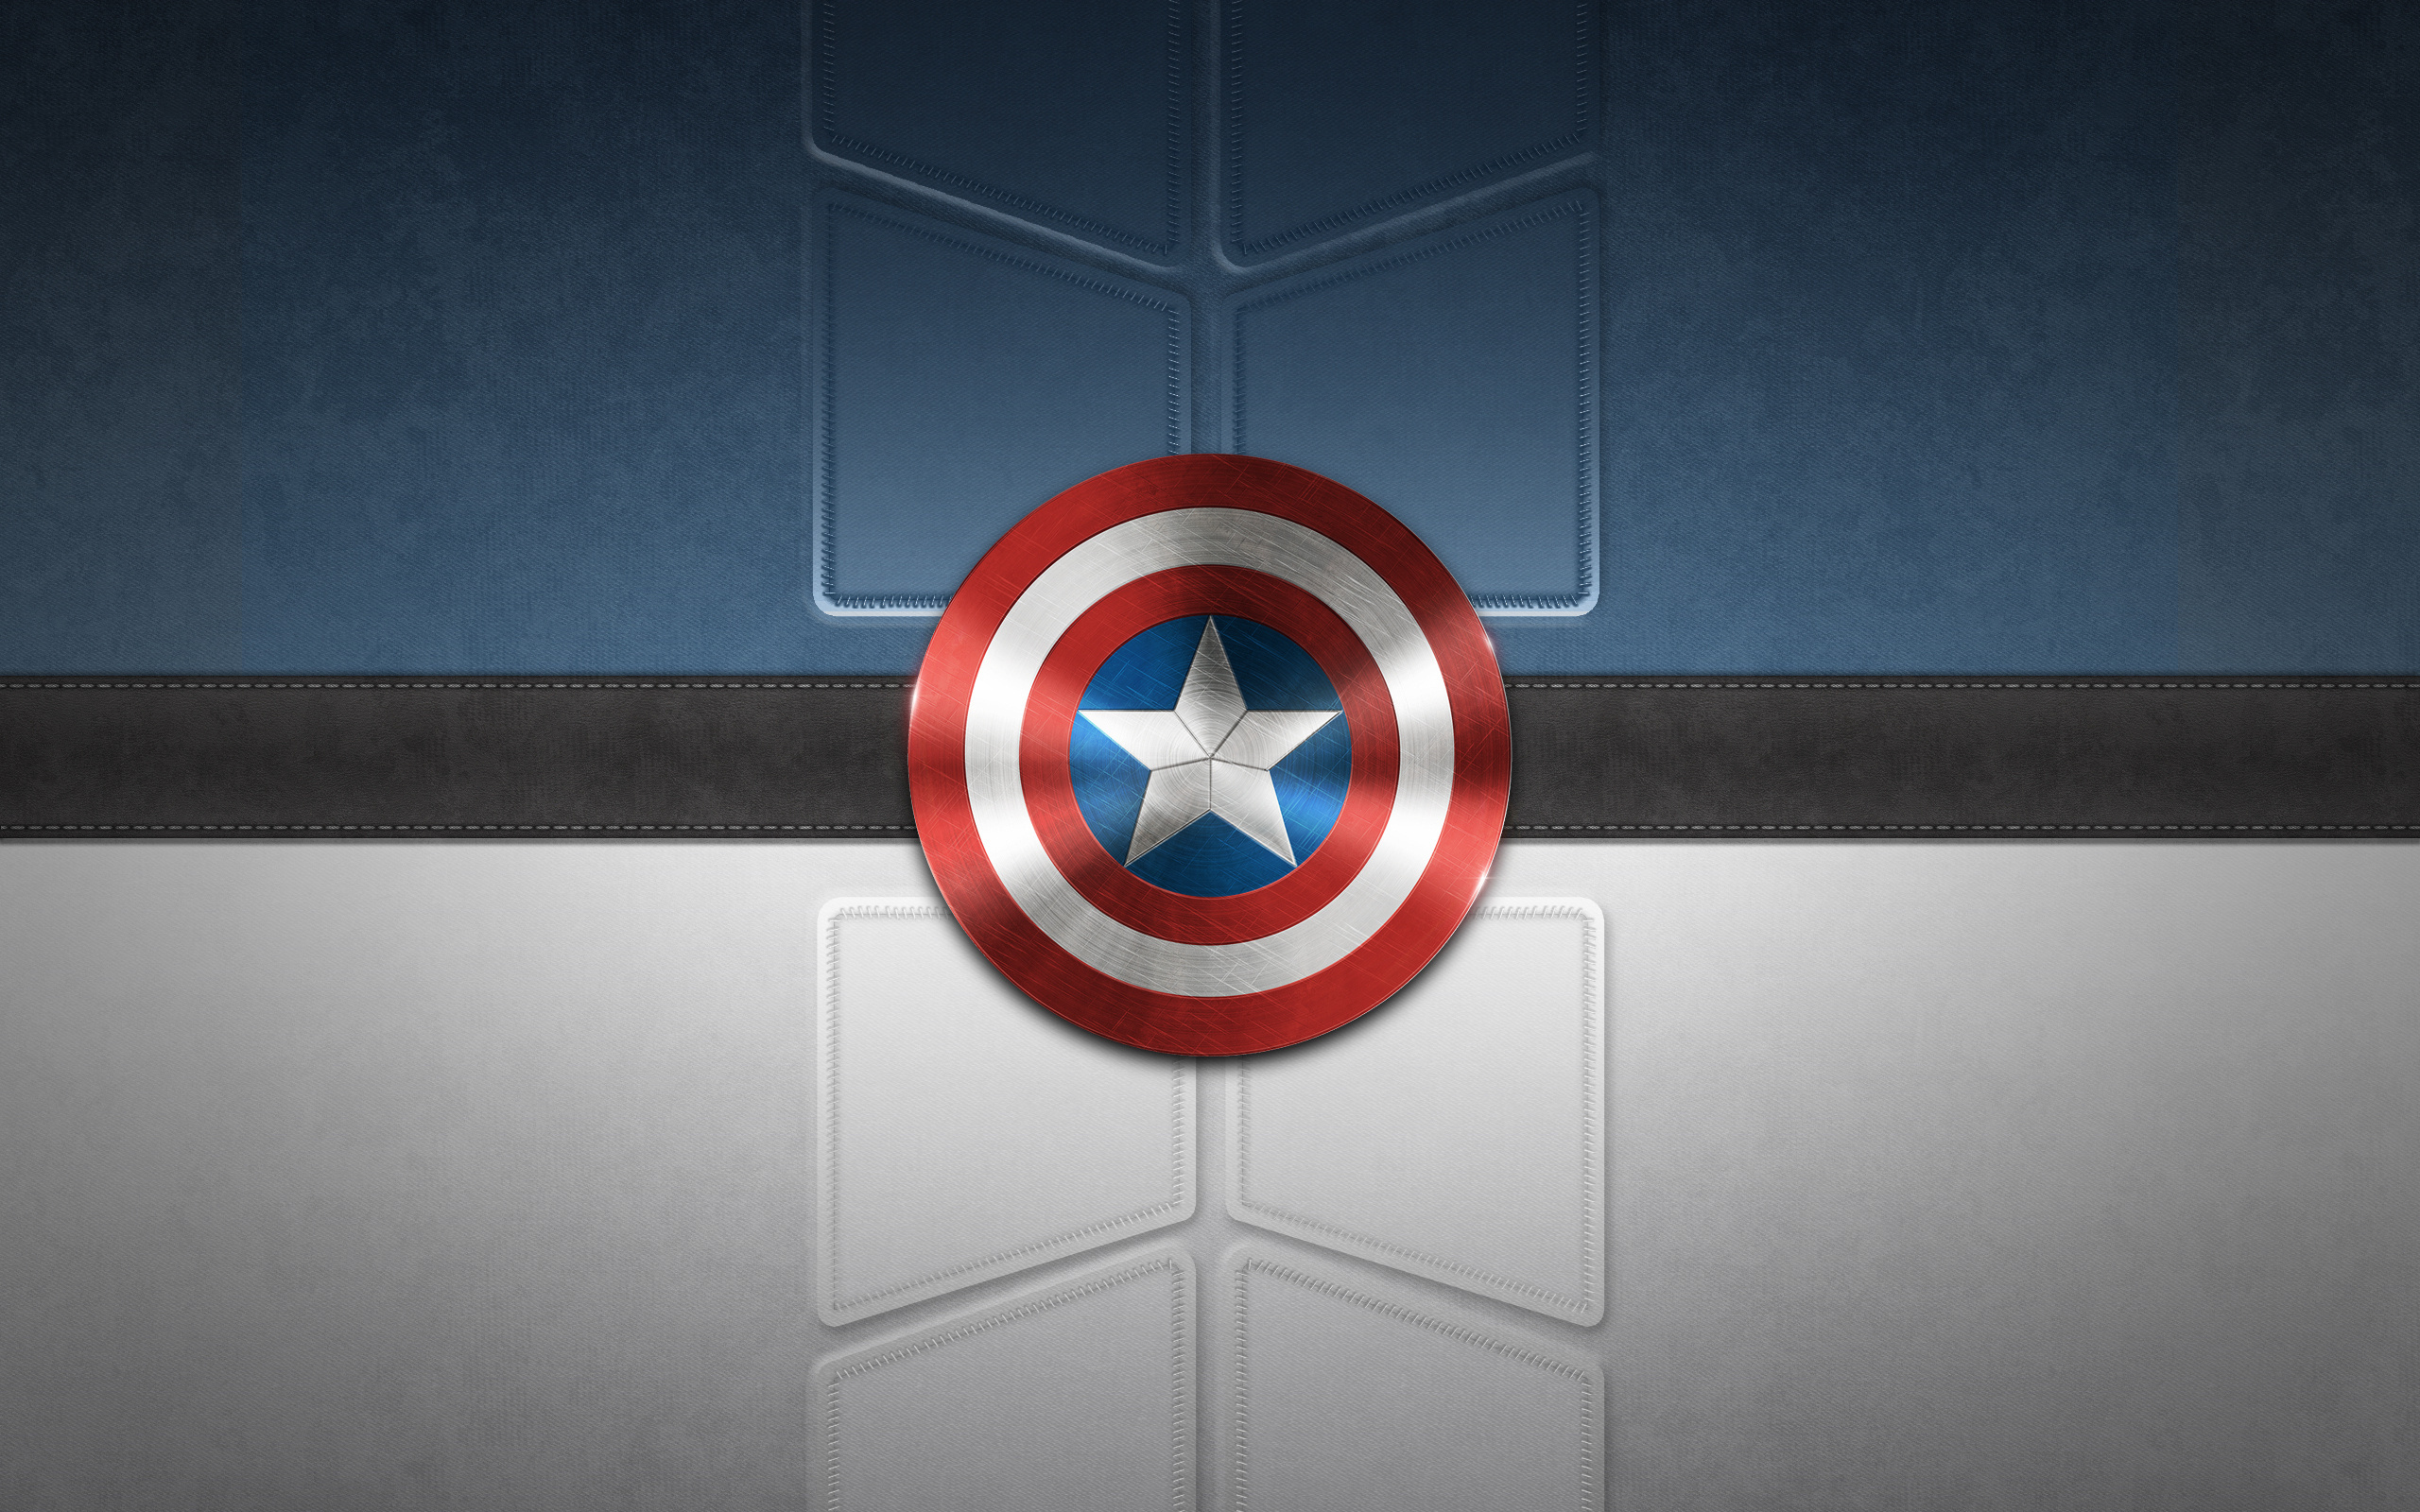 キャプテンアメリカフルhd壁紙,キャプテン・アメリカ,架空の人物,象徴,スーパーヒーロー,国旗